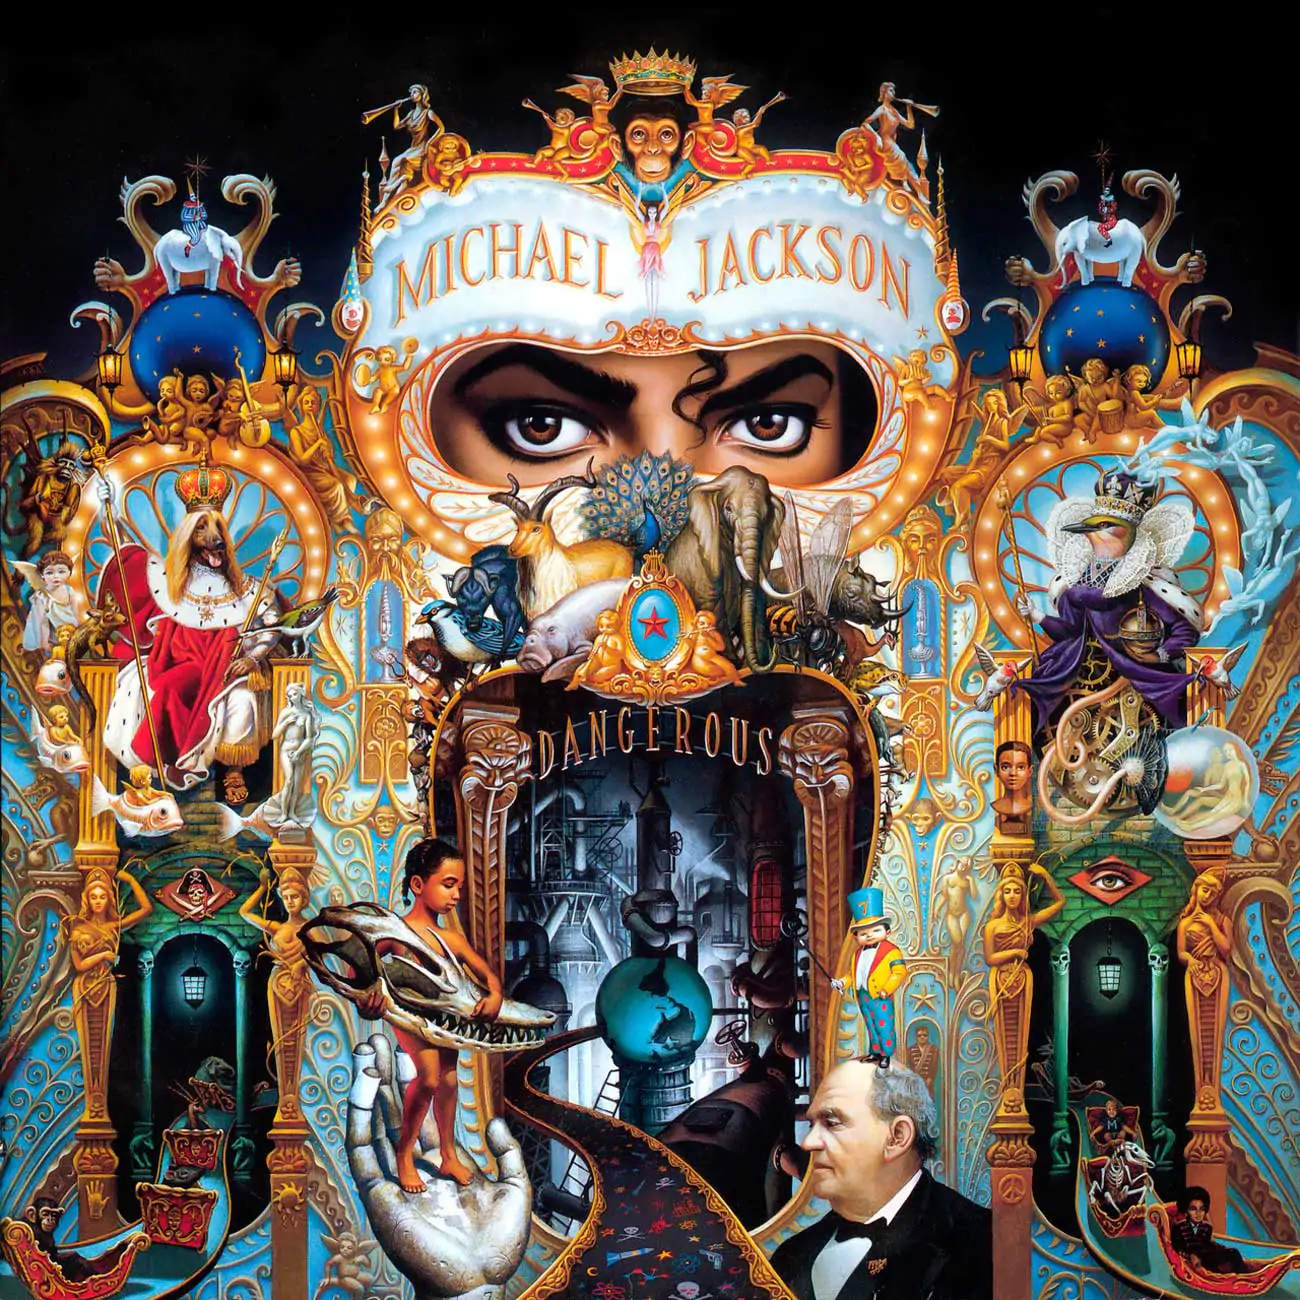 illuminati symbols michael jackson dangerous album cover